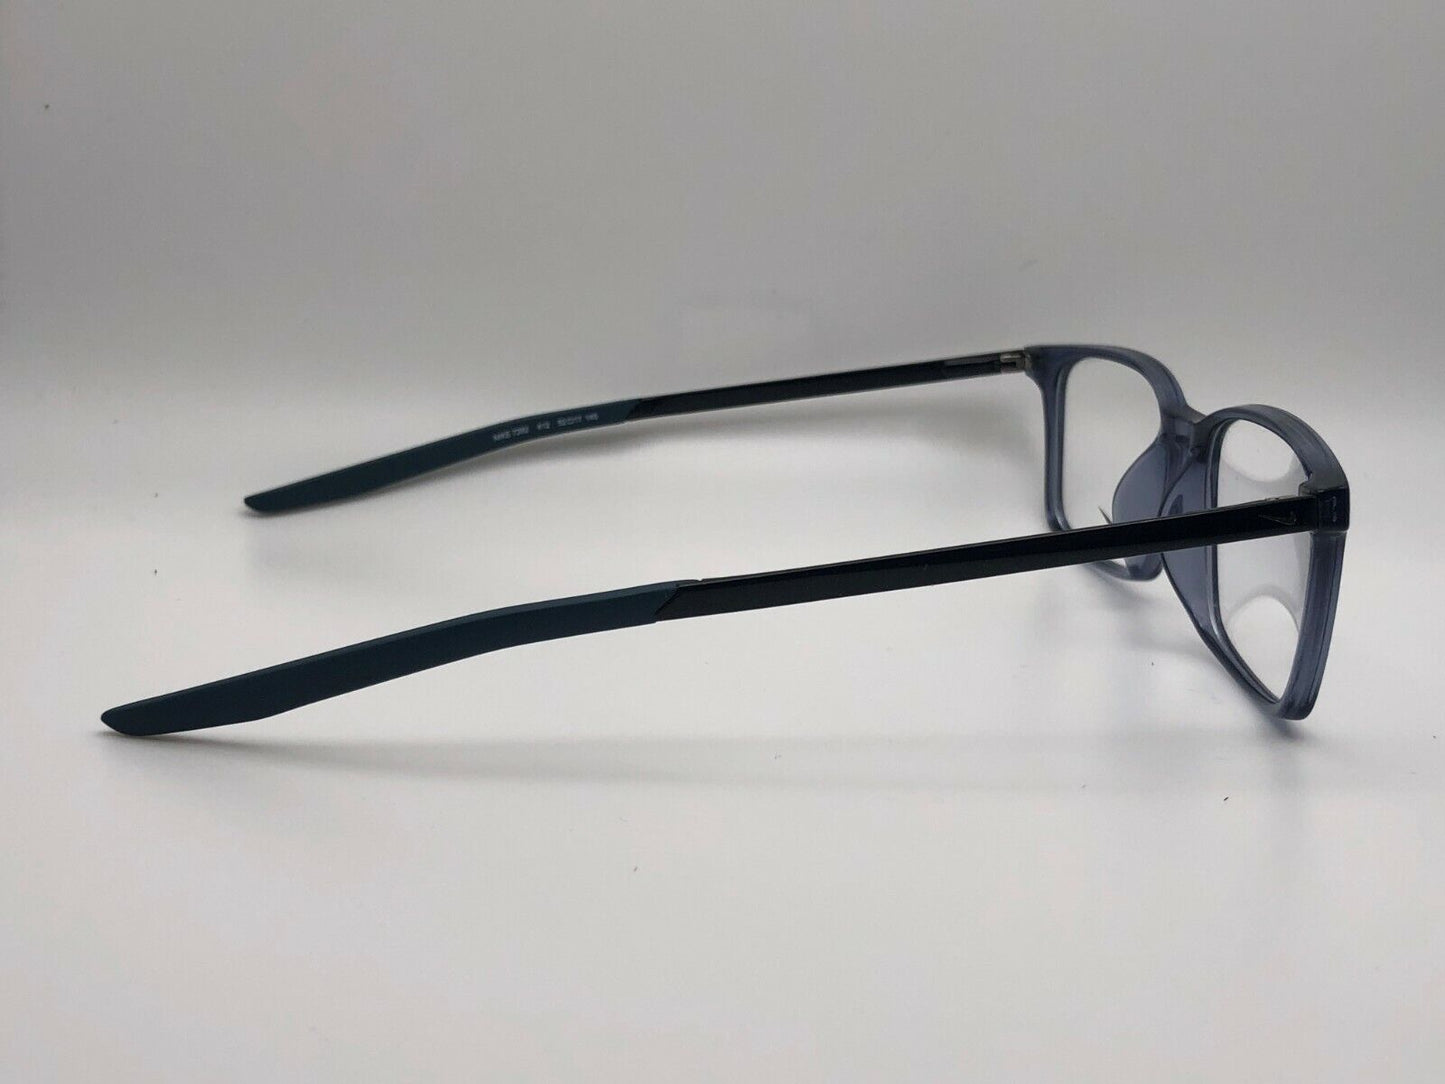 Nike 7282-412-S217 S2mm New Eyeglasses